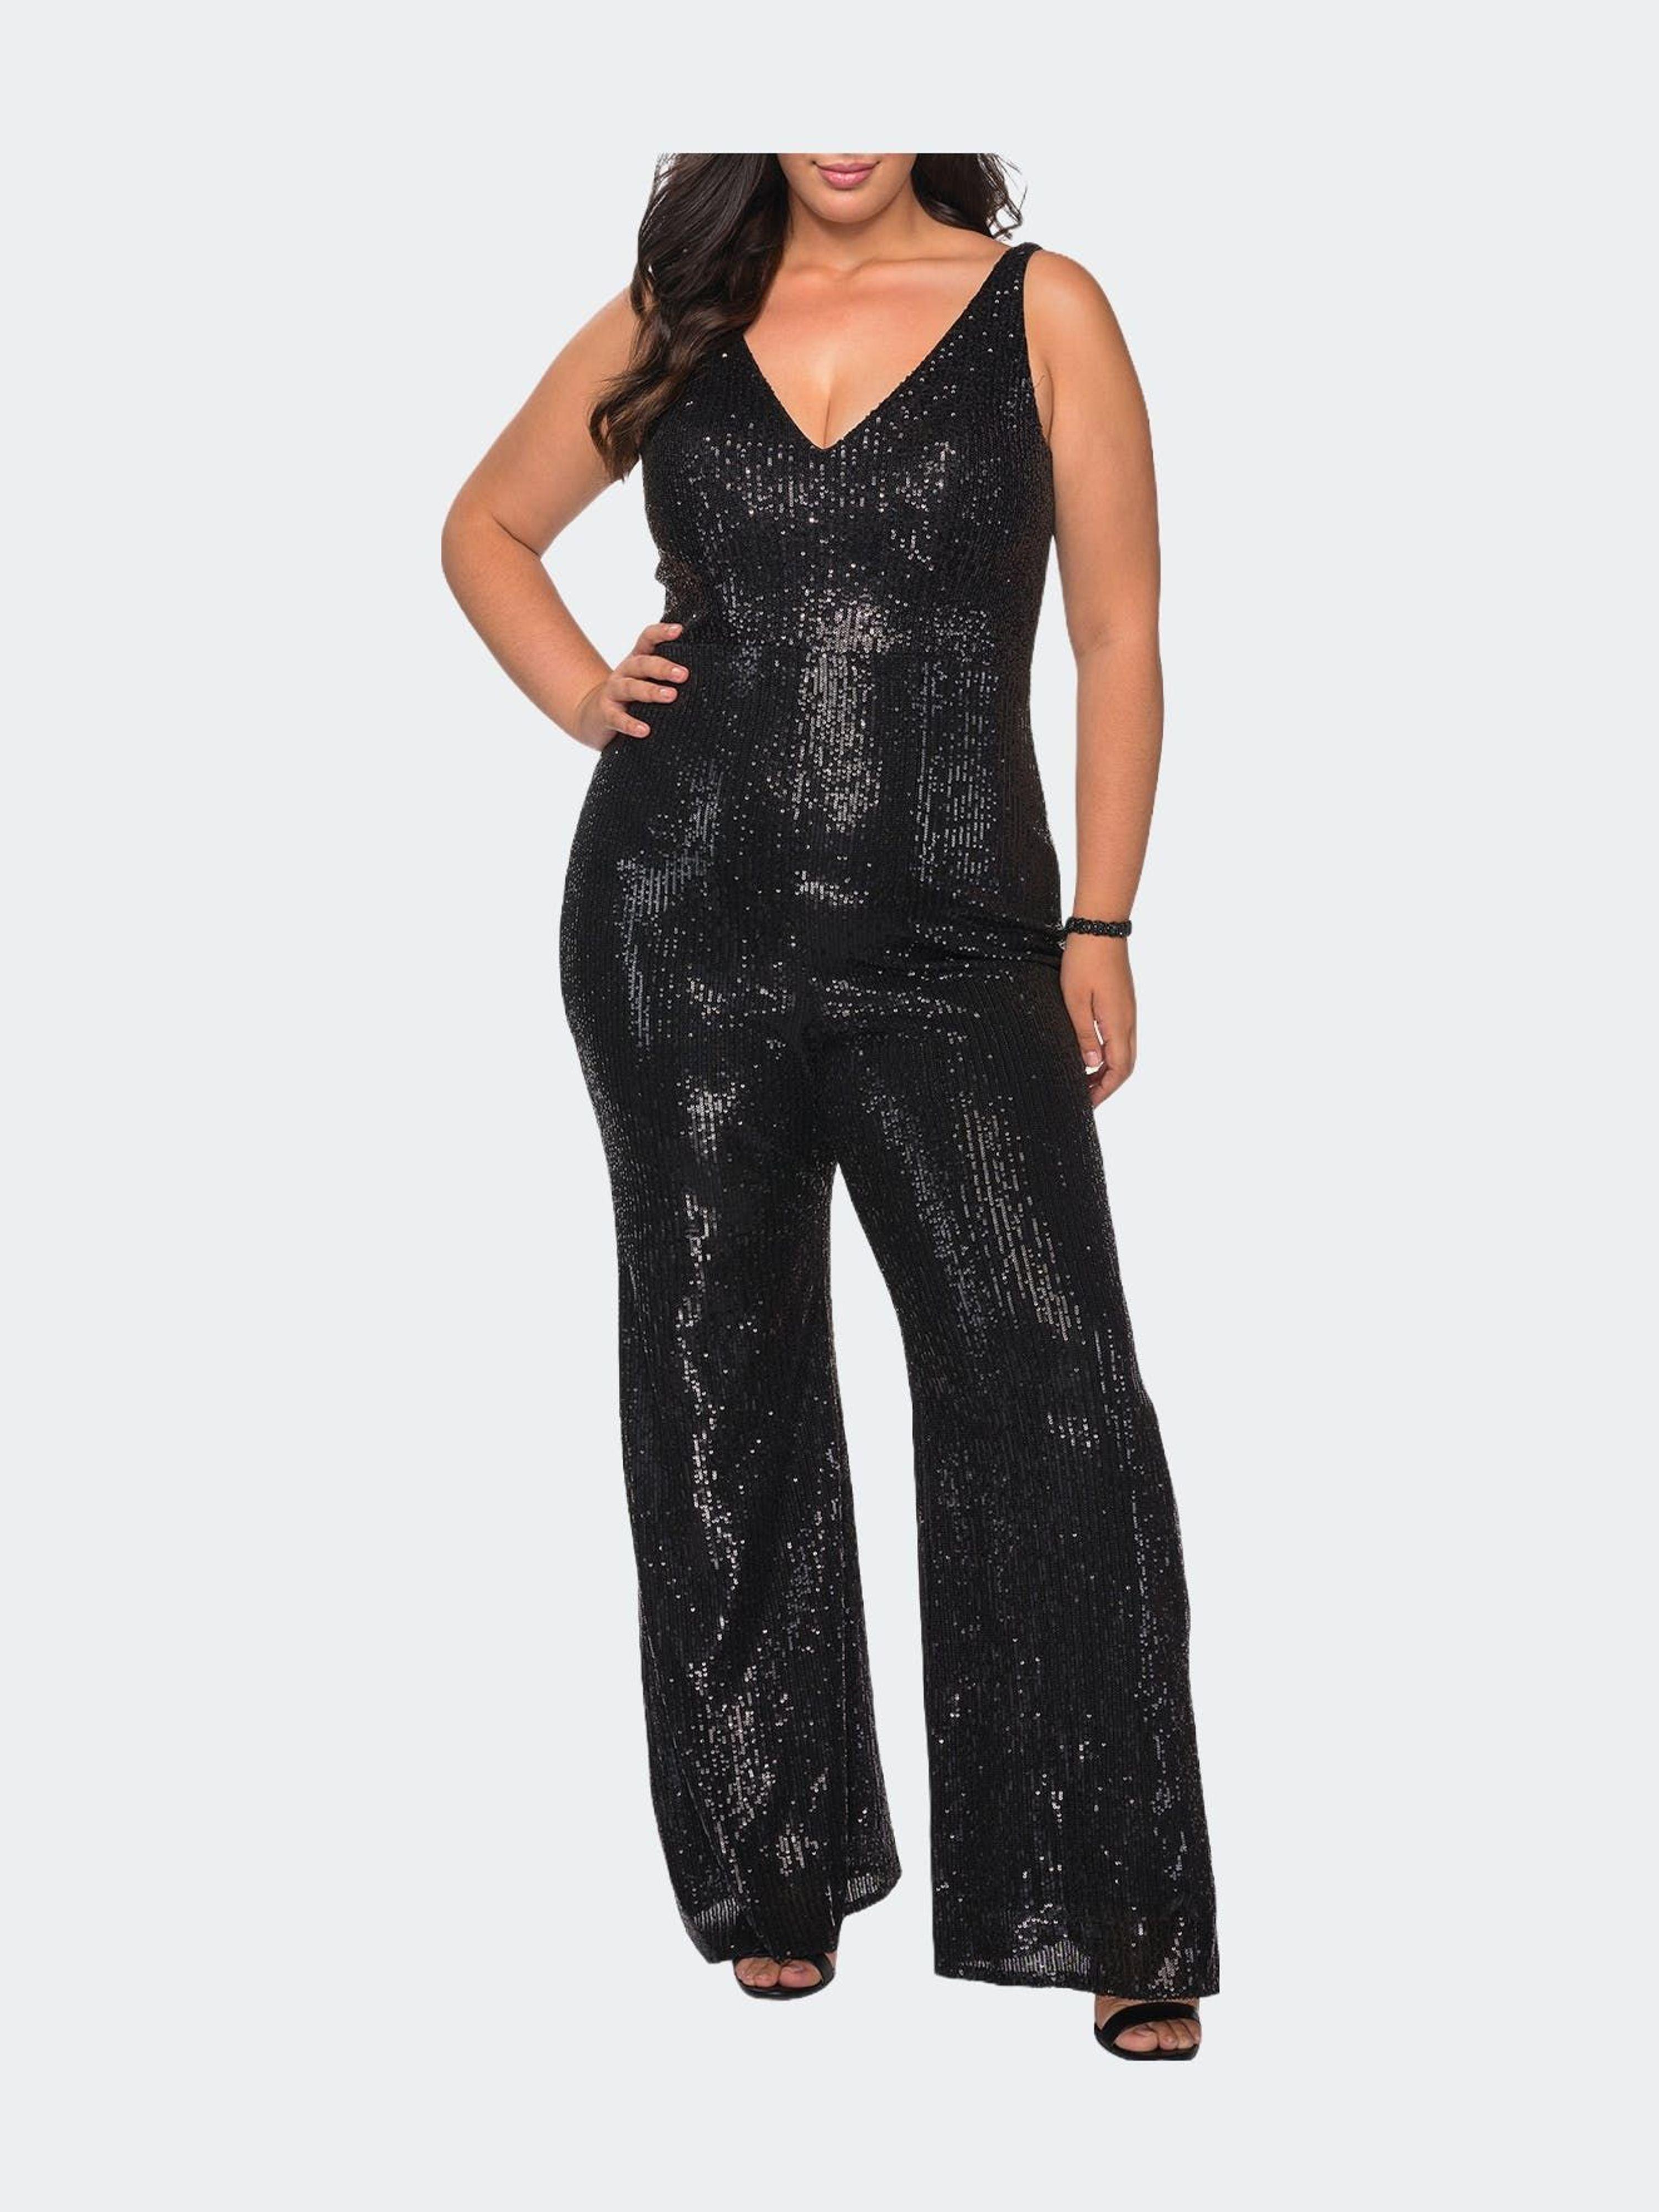 La Femme Sequin Plus Size Jumpsuit With Plunging Neckline in Black | Lyst